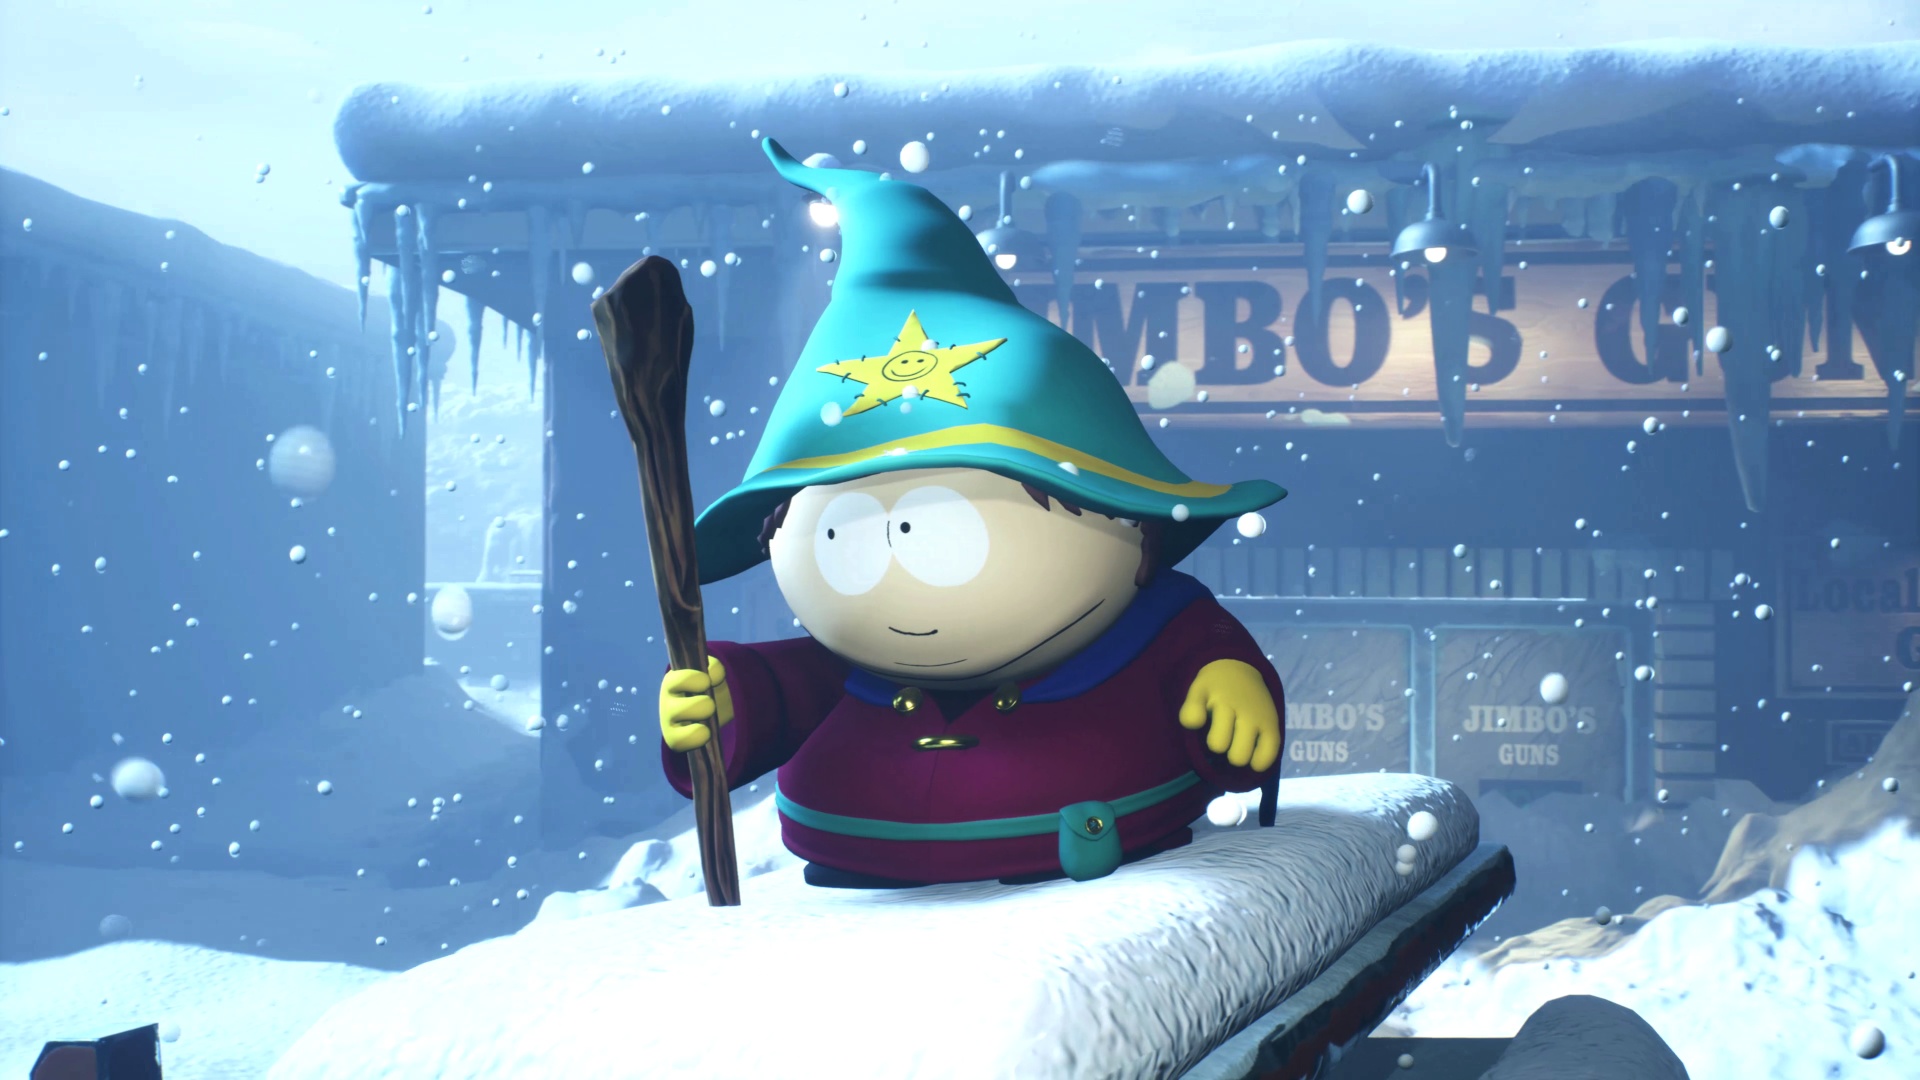 #Neues South-Park-Spiel angekündigt, aber es wird ganz anders als die Rollenspiel-Vorgänger